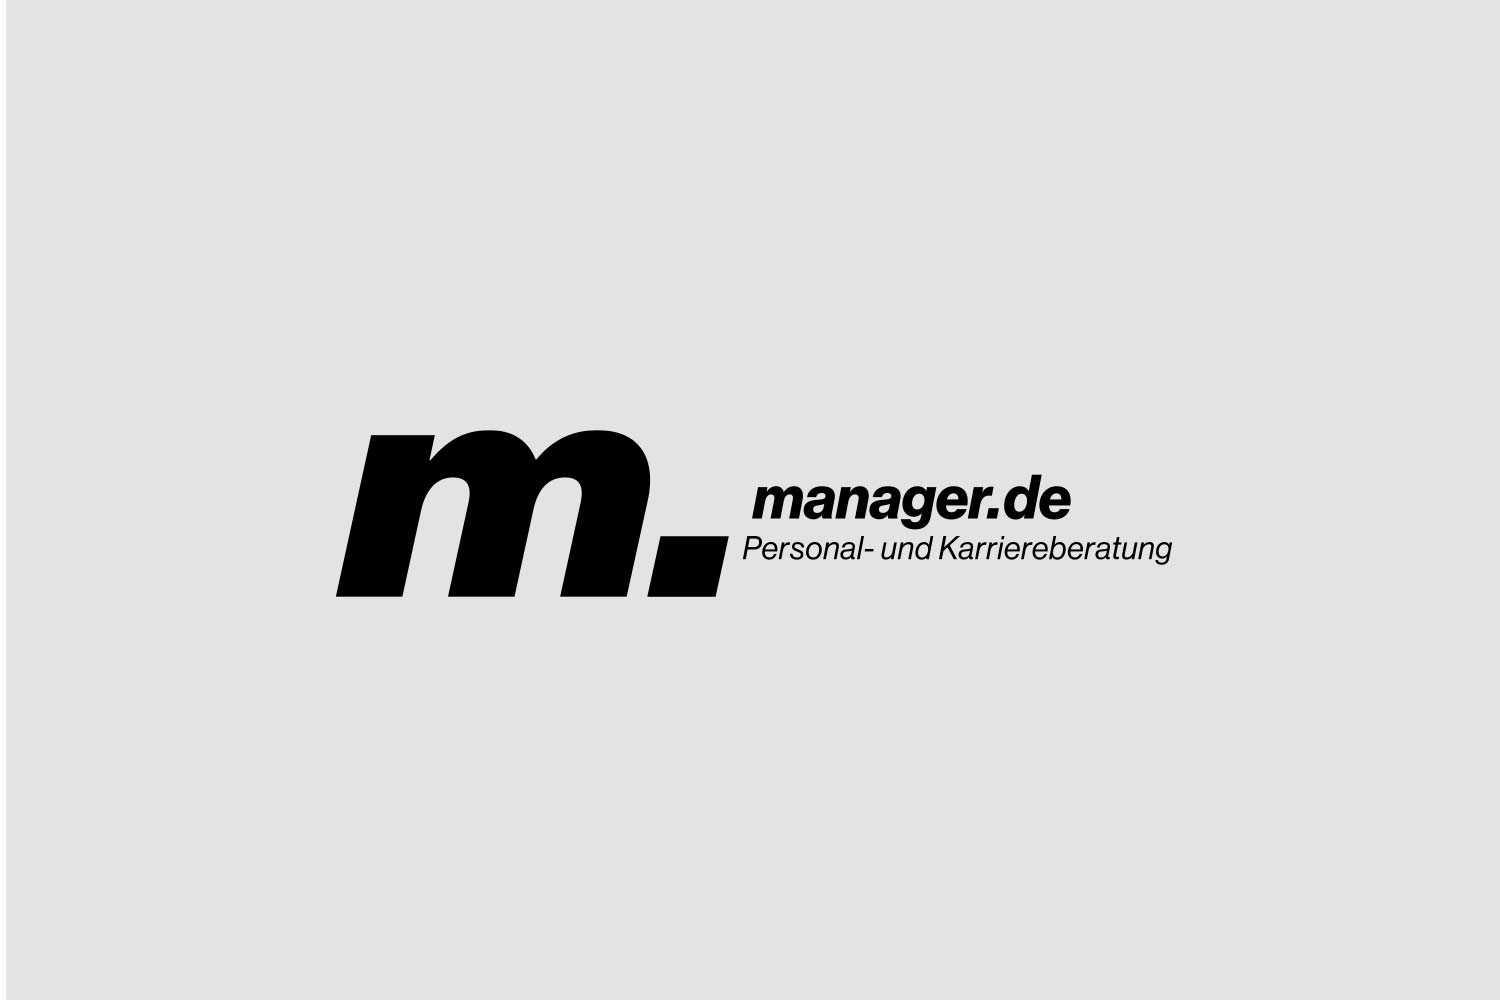 Logo manager.de